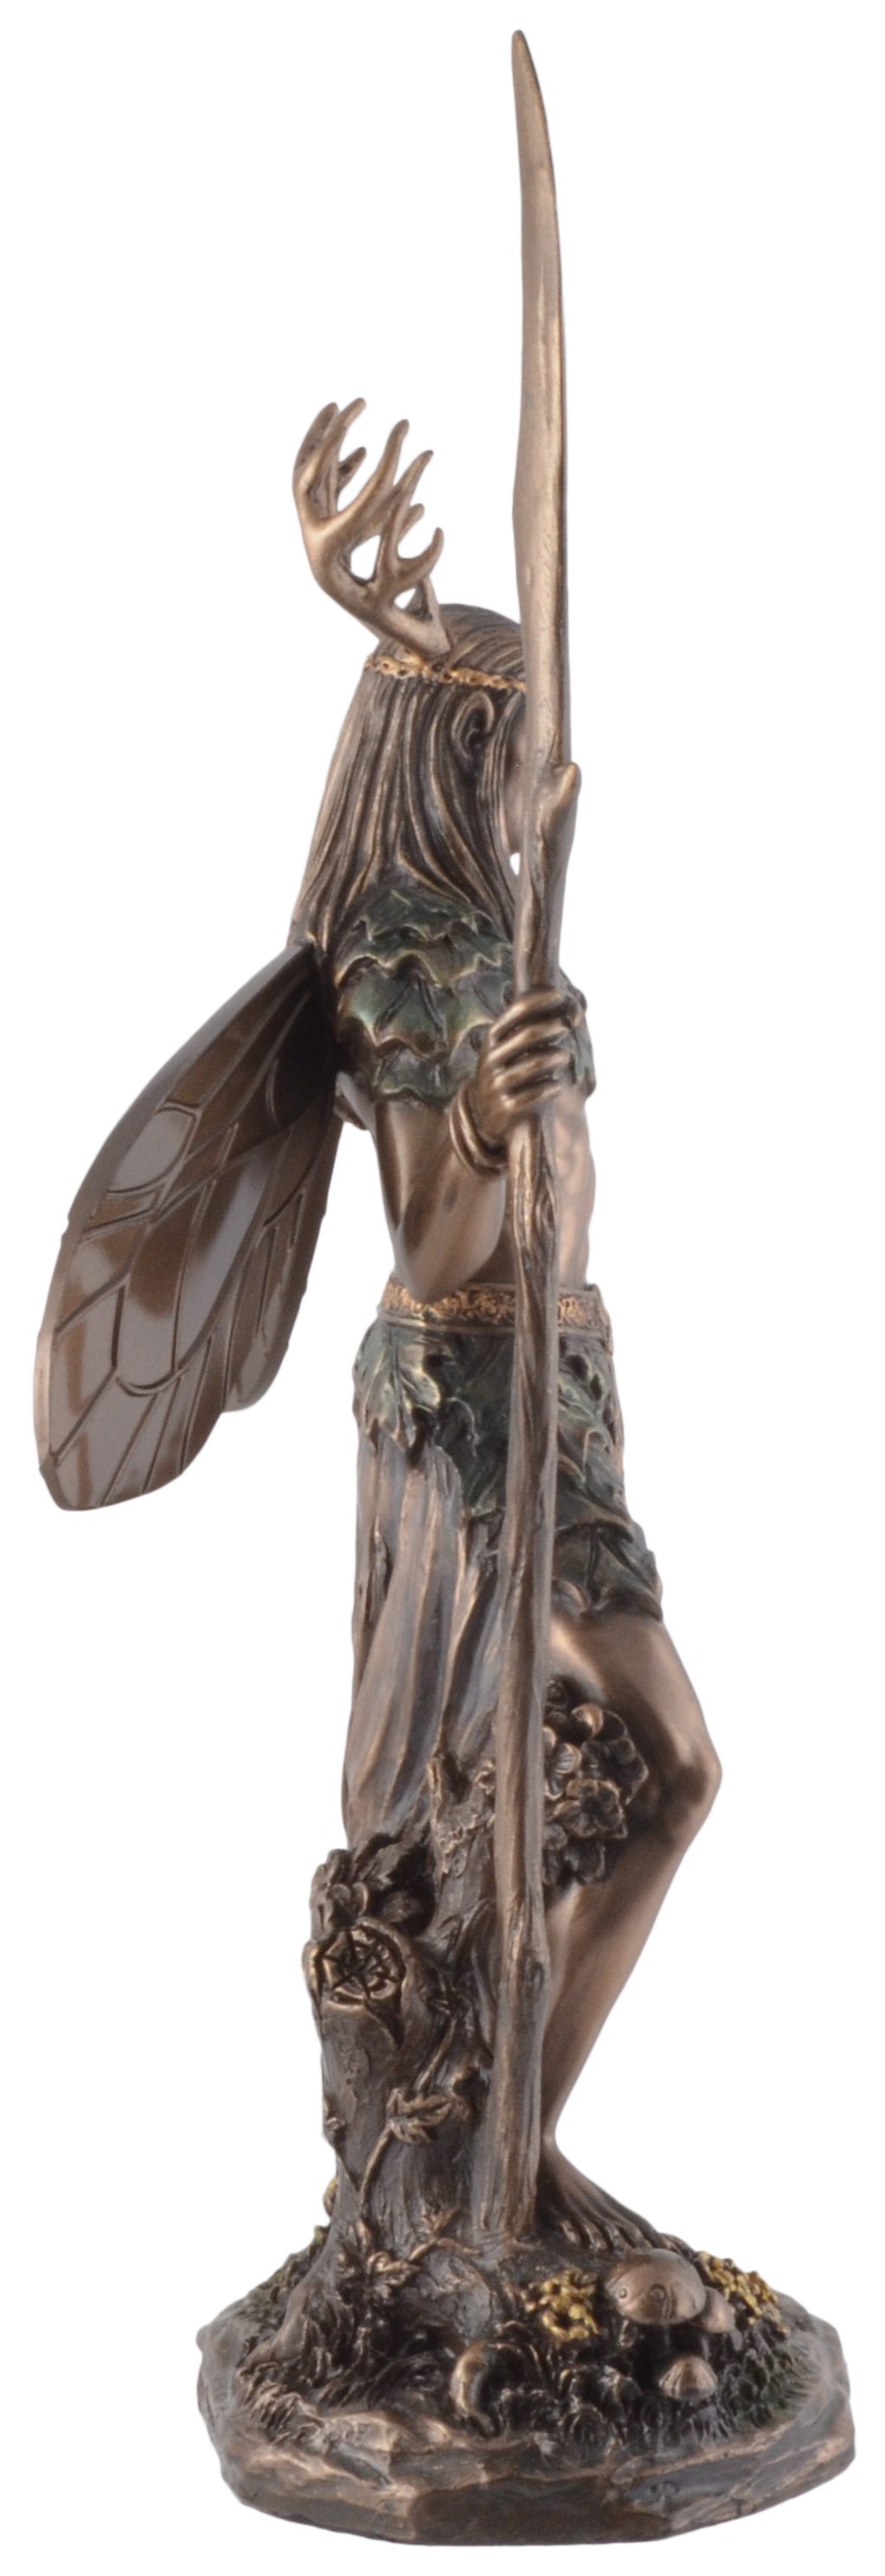 Vogler direct Gmbh Dekofigur Keltischer 14x8x27cm Druide bronziert/coloriert Größe: by ca. und Veronese, bronziert, mit coloriert - Veronese, L/B/H Hirschgeweih